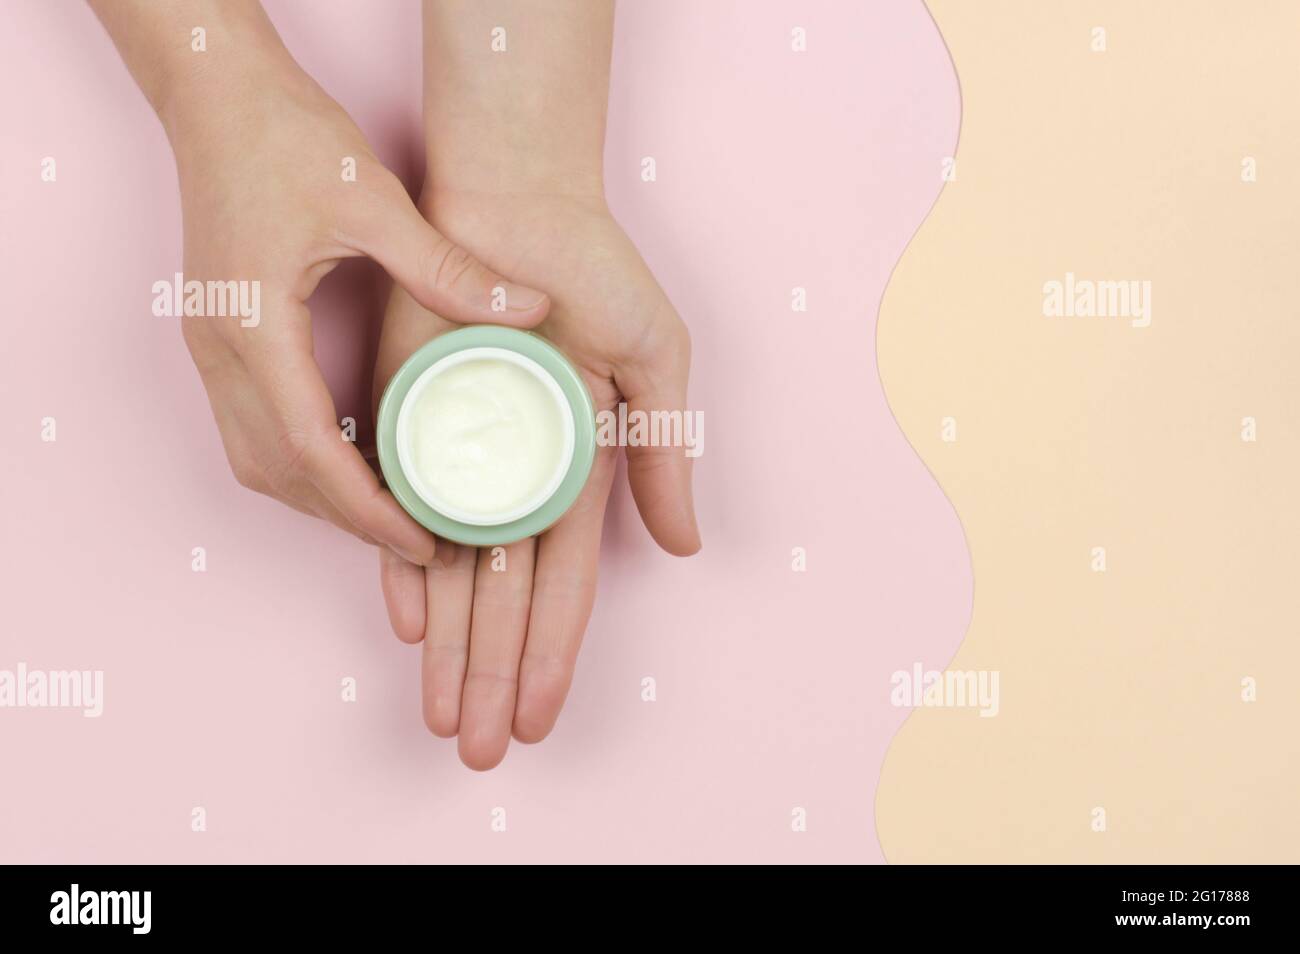 Un pot ouvert de crème dans la main d'une femme. Cosmétiques organiques pour les soins de la peau. Concept de beauté Banque D'Images